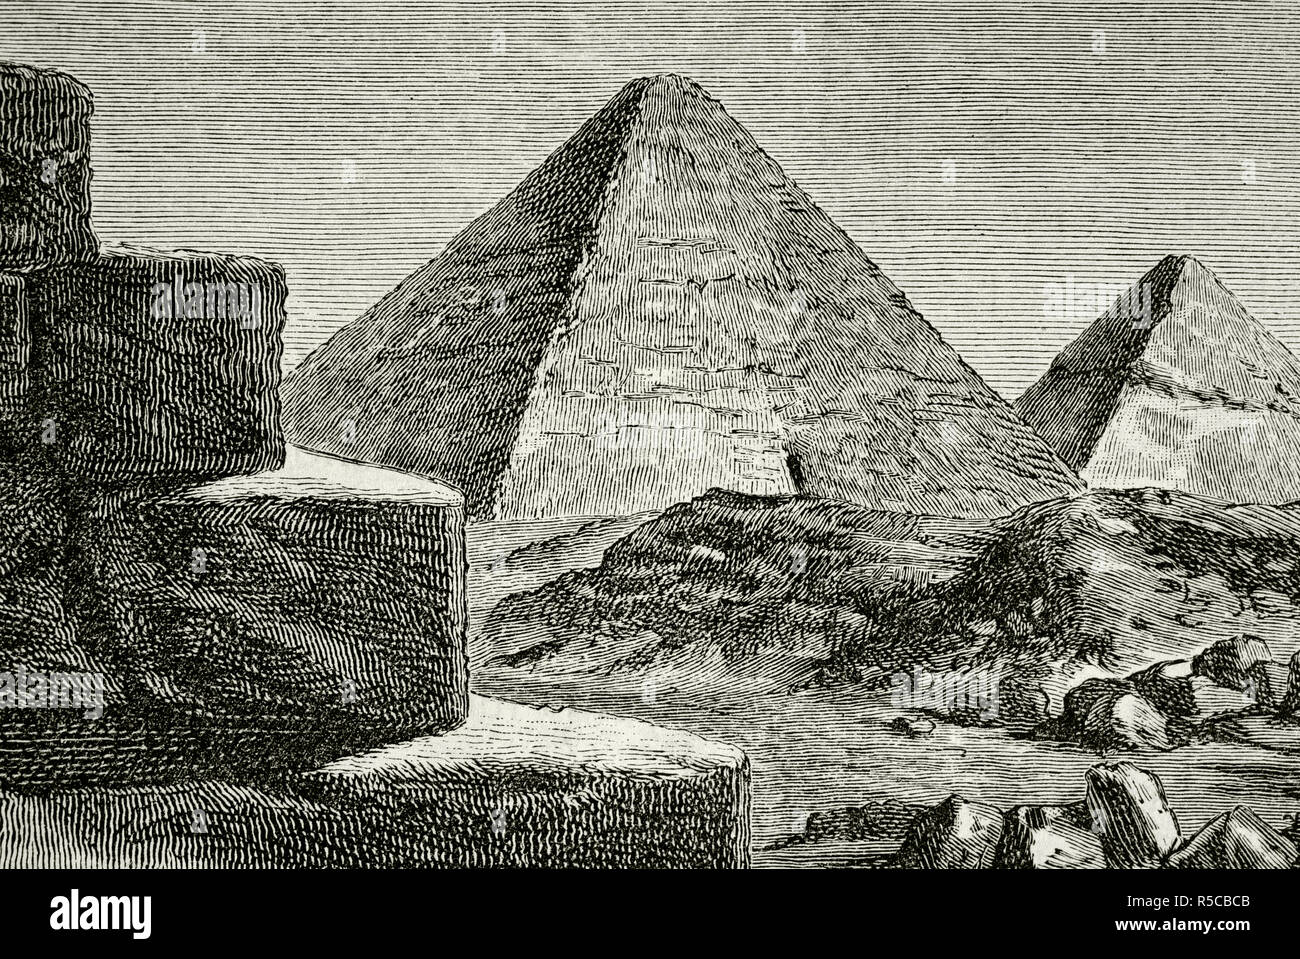 A nord dell'Africa. Antico Egitto. La Piramide di Giza complesso. Antico Regno d'Egitto. 2686-21191 BC. Incisione. La Civilizacion (la civiltà), volume I, 1881. Foto Stock